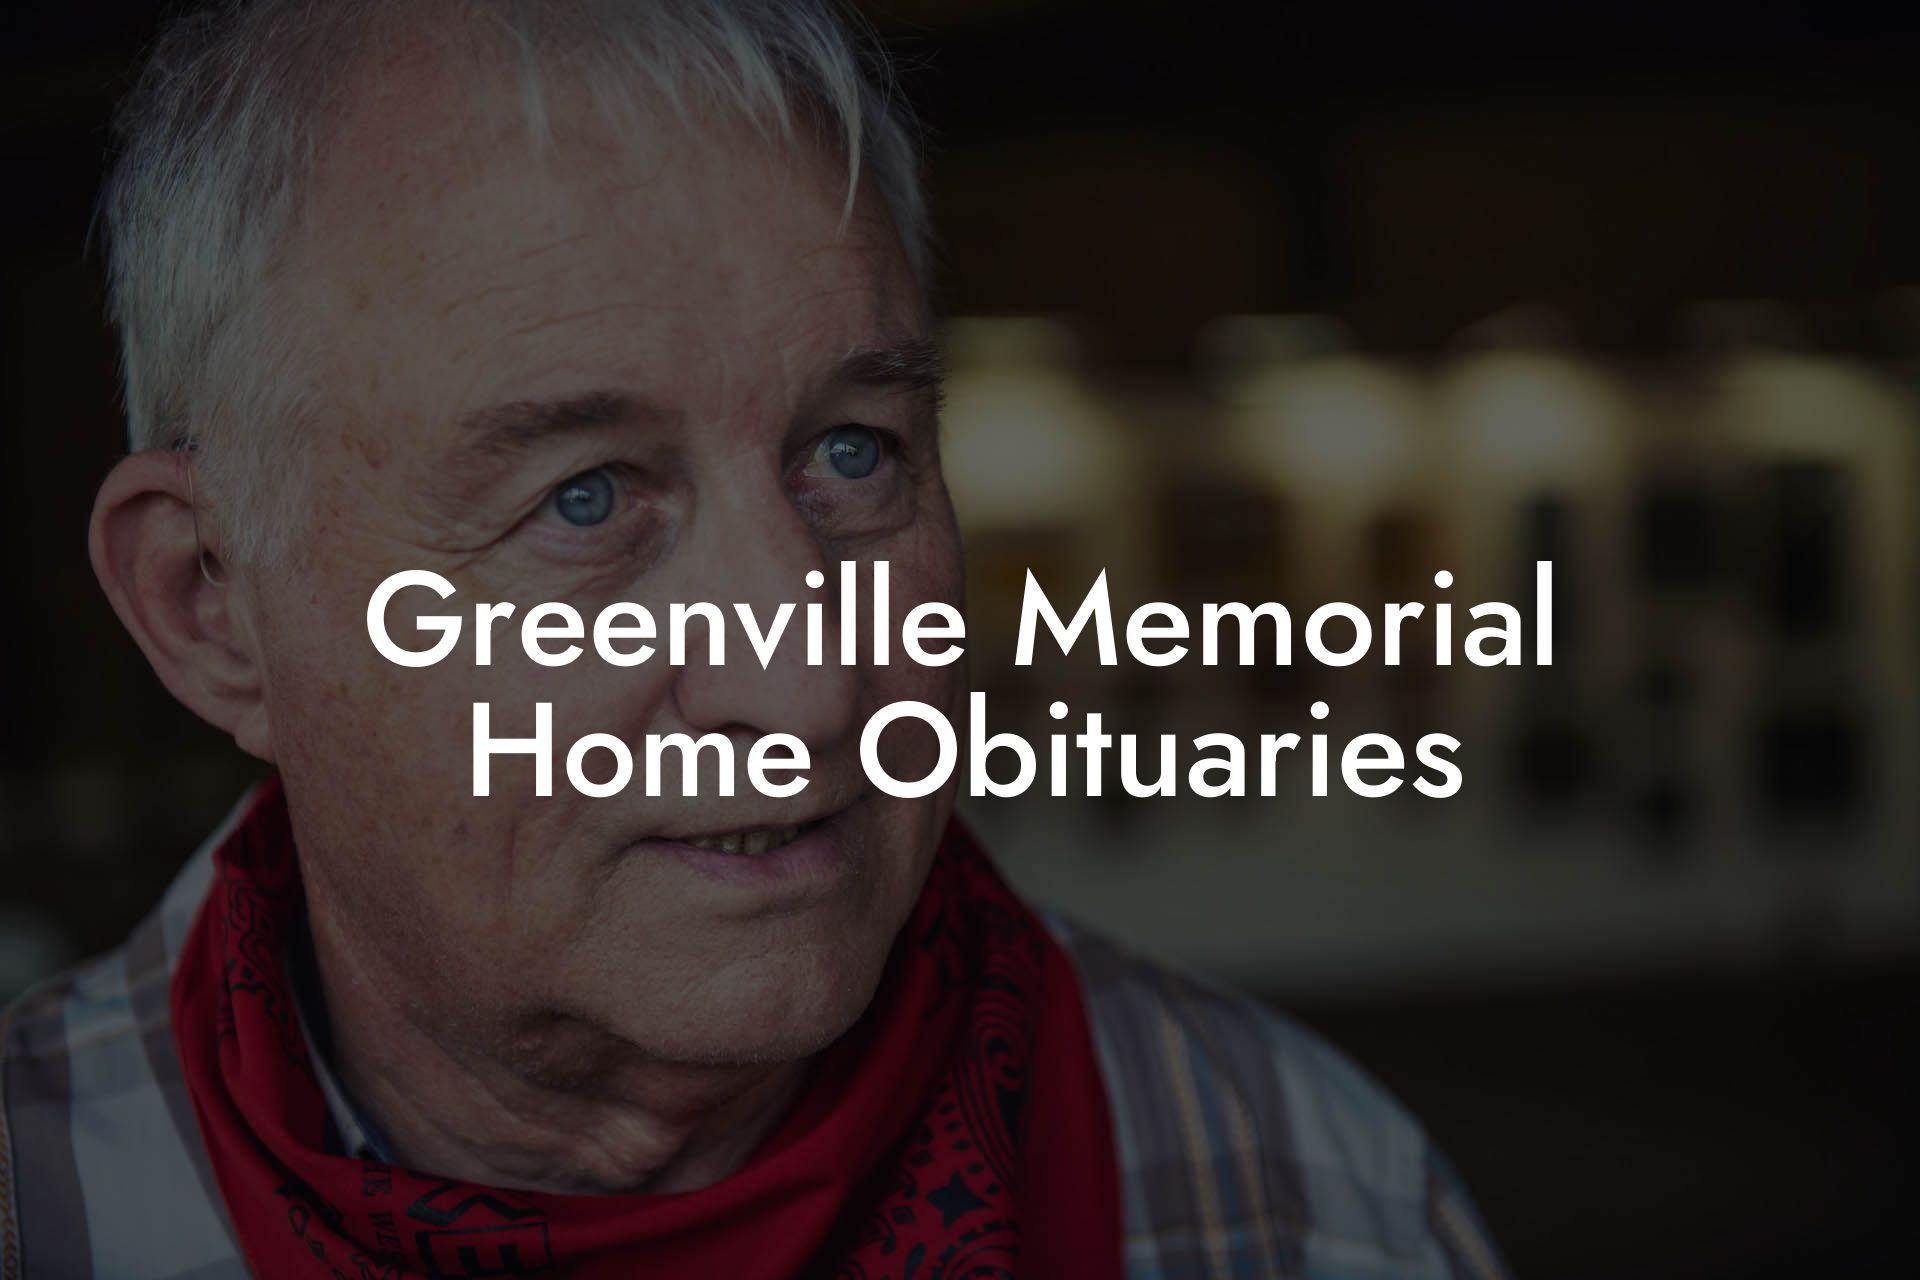 Greenville Memorial Home Obituaries